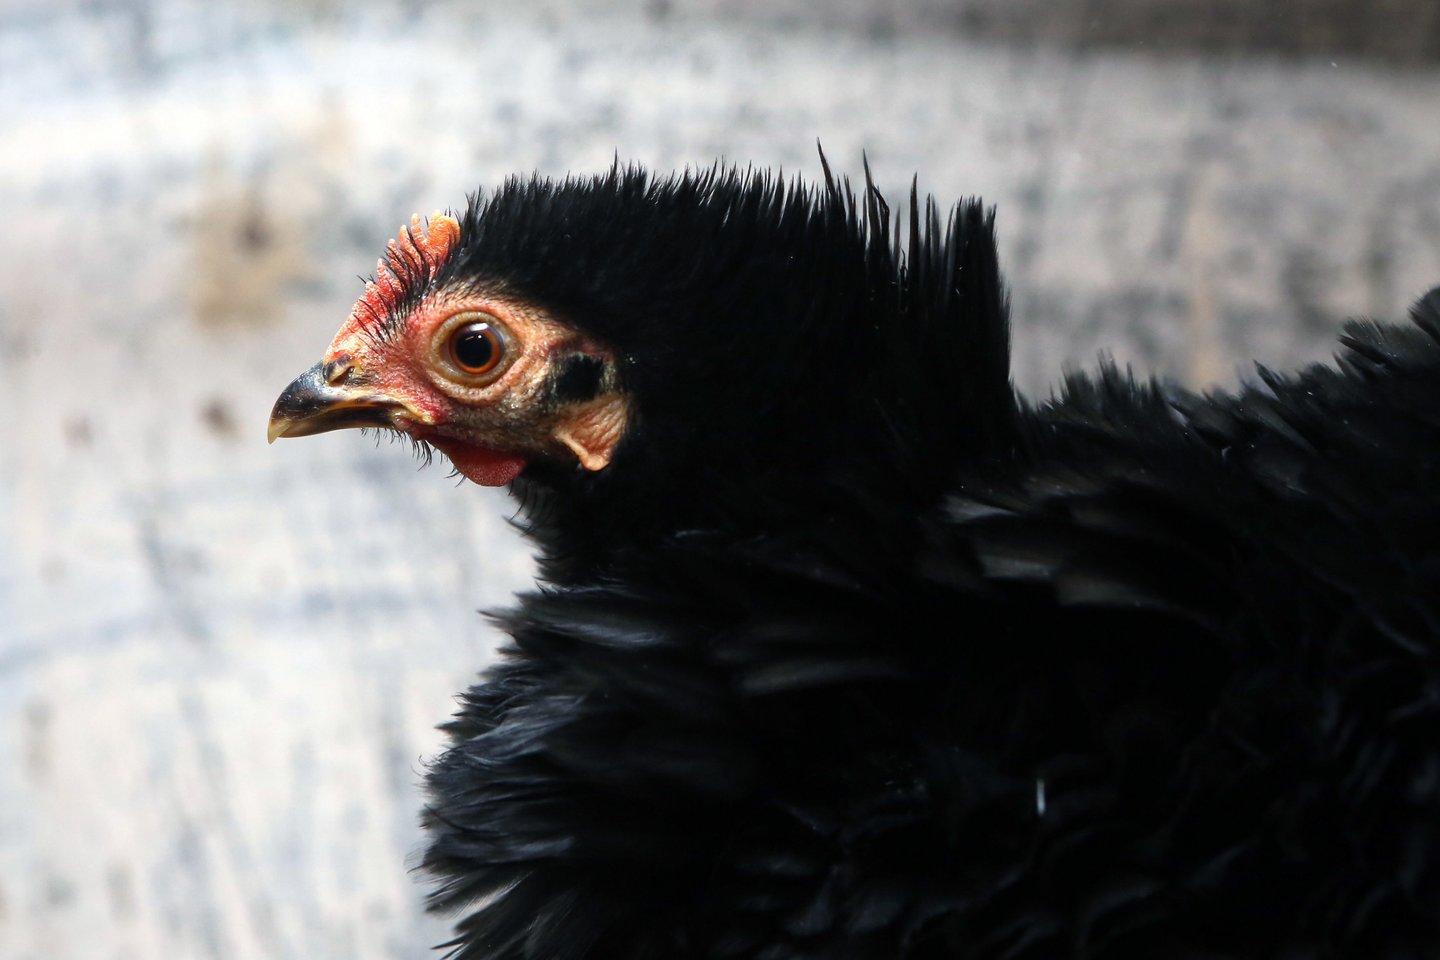 Galimo paukščių gripo protrūkio bijančios įmonės sustiprino biosaugos priemones.<br>M.Patašiaus nuotr.